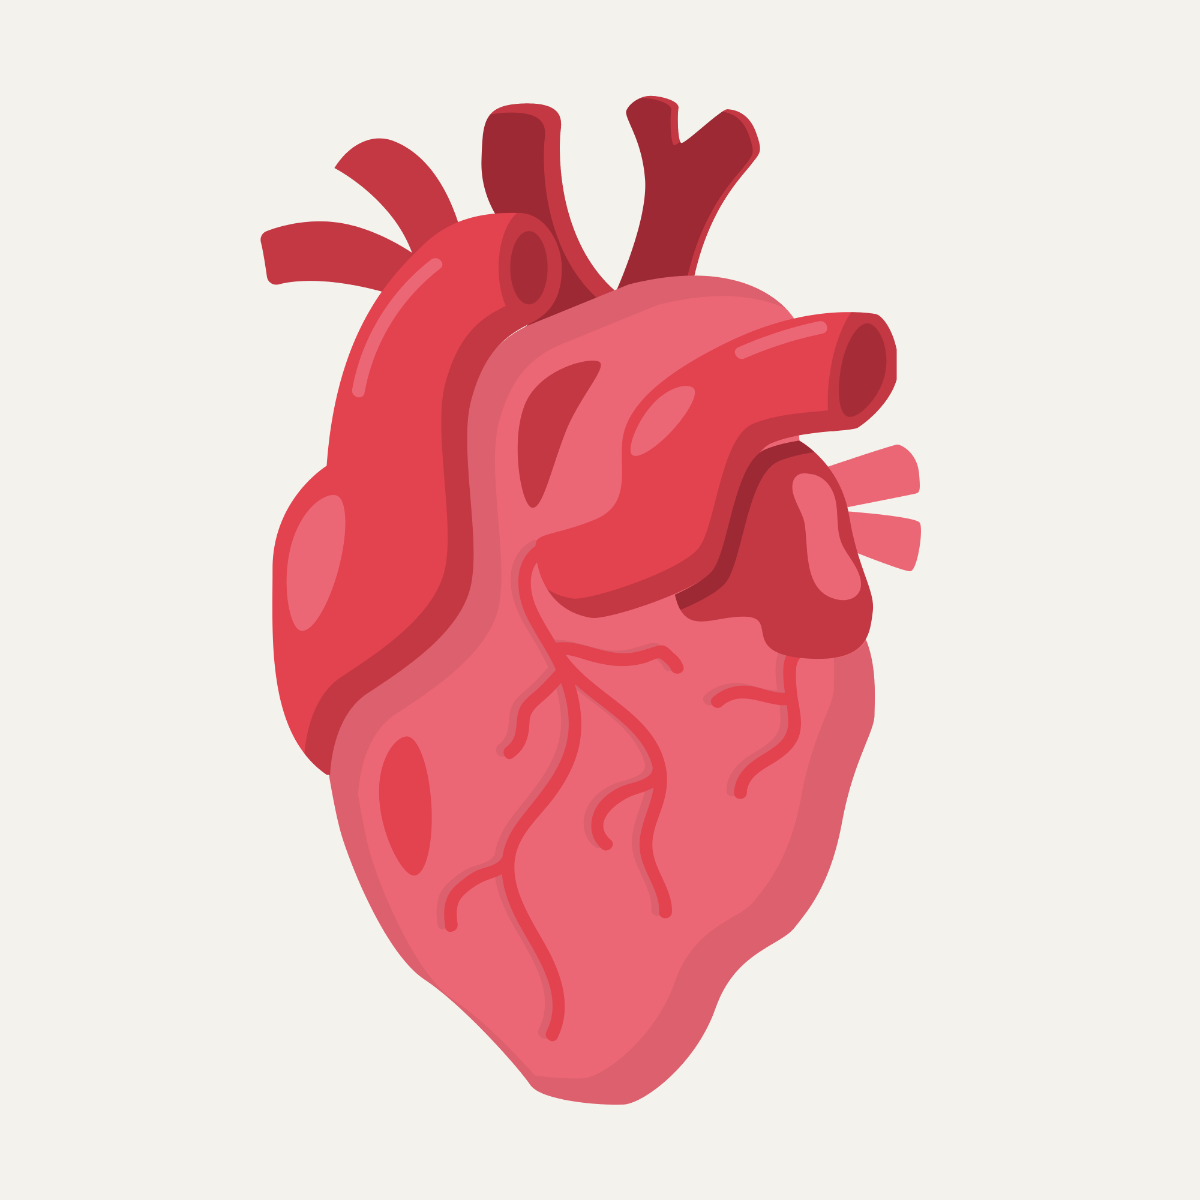 Human Heart Vector Template